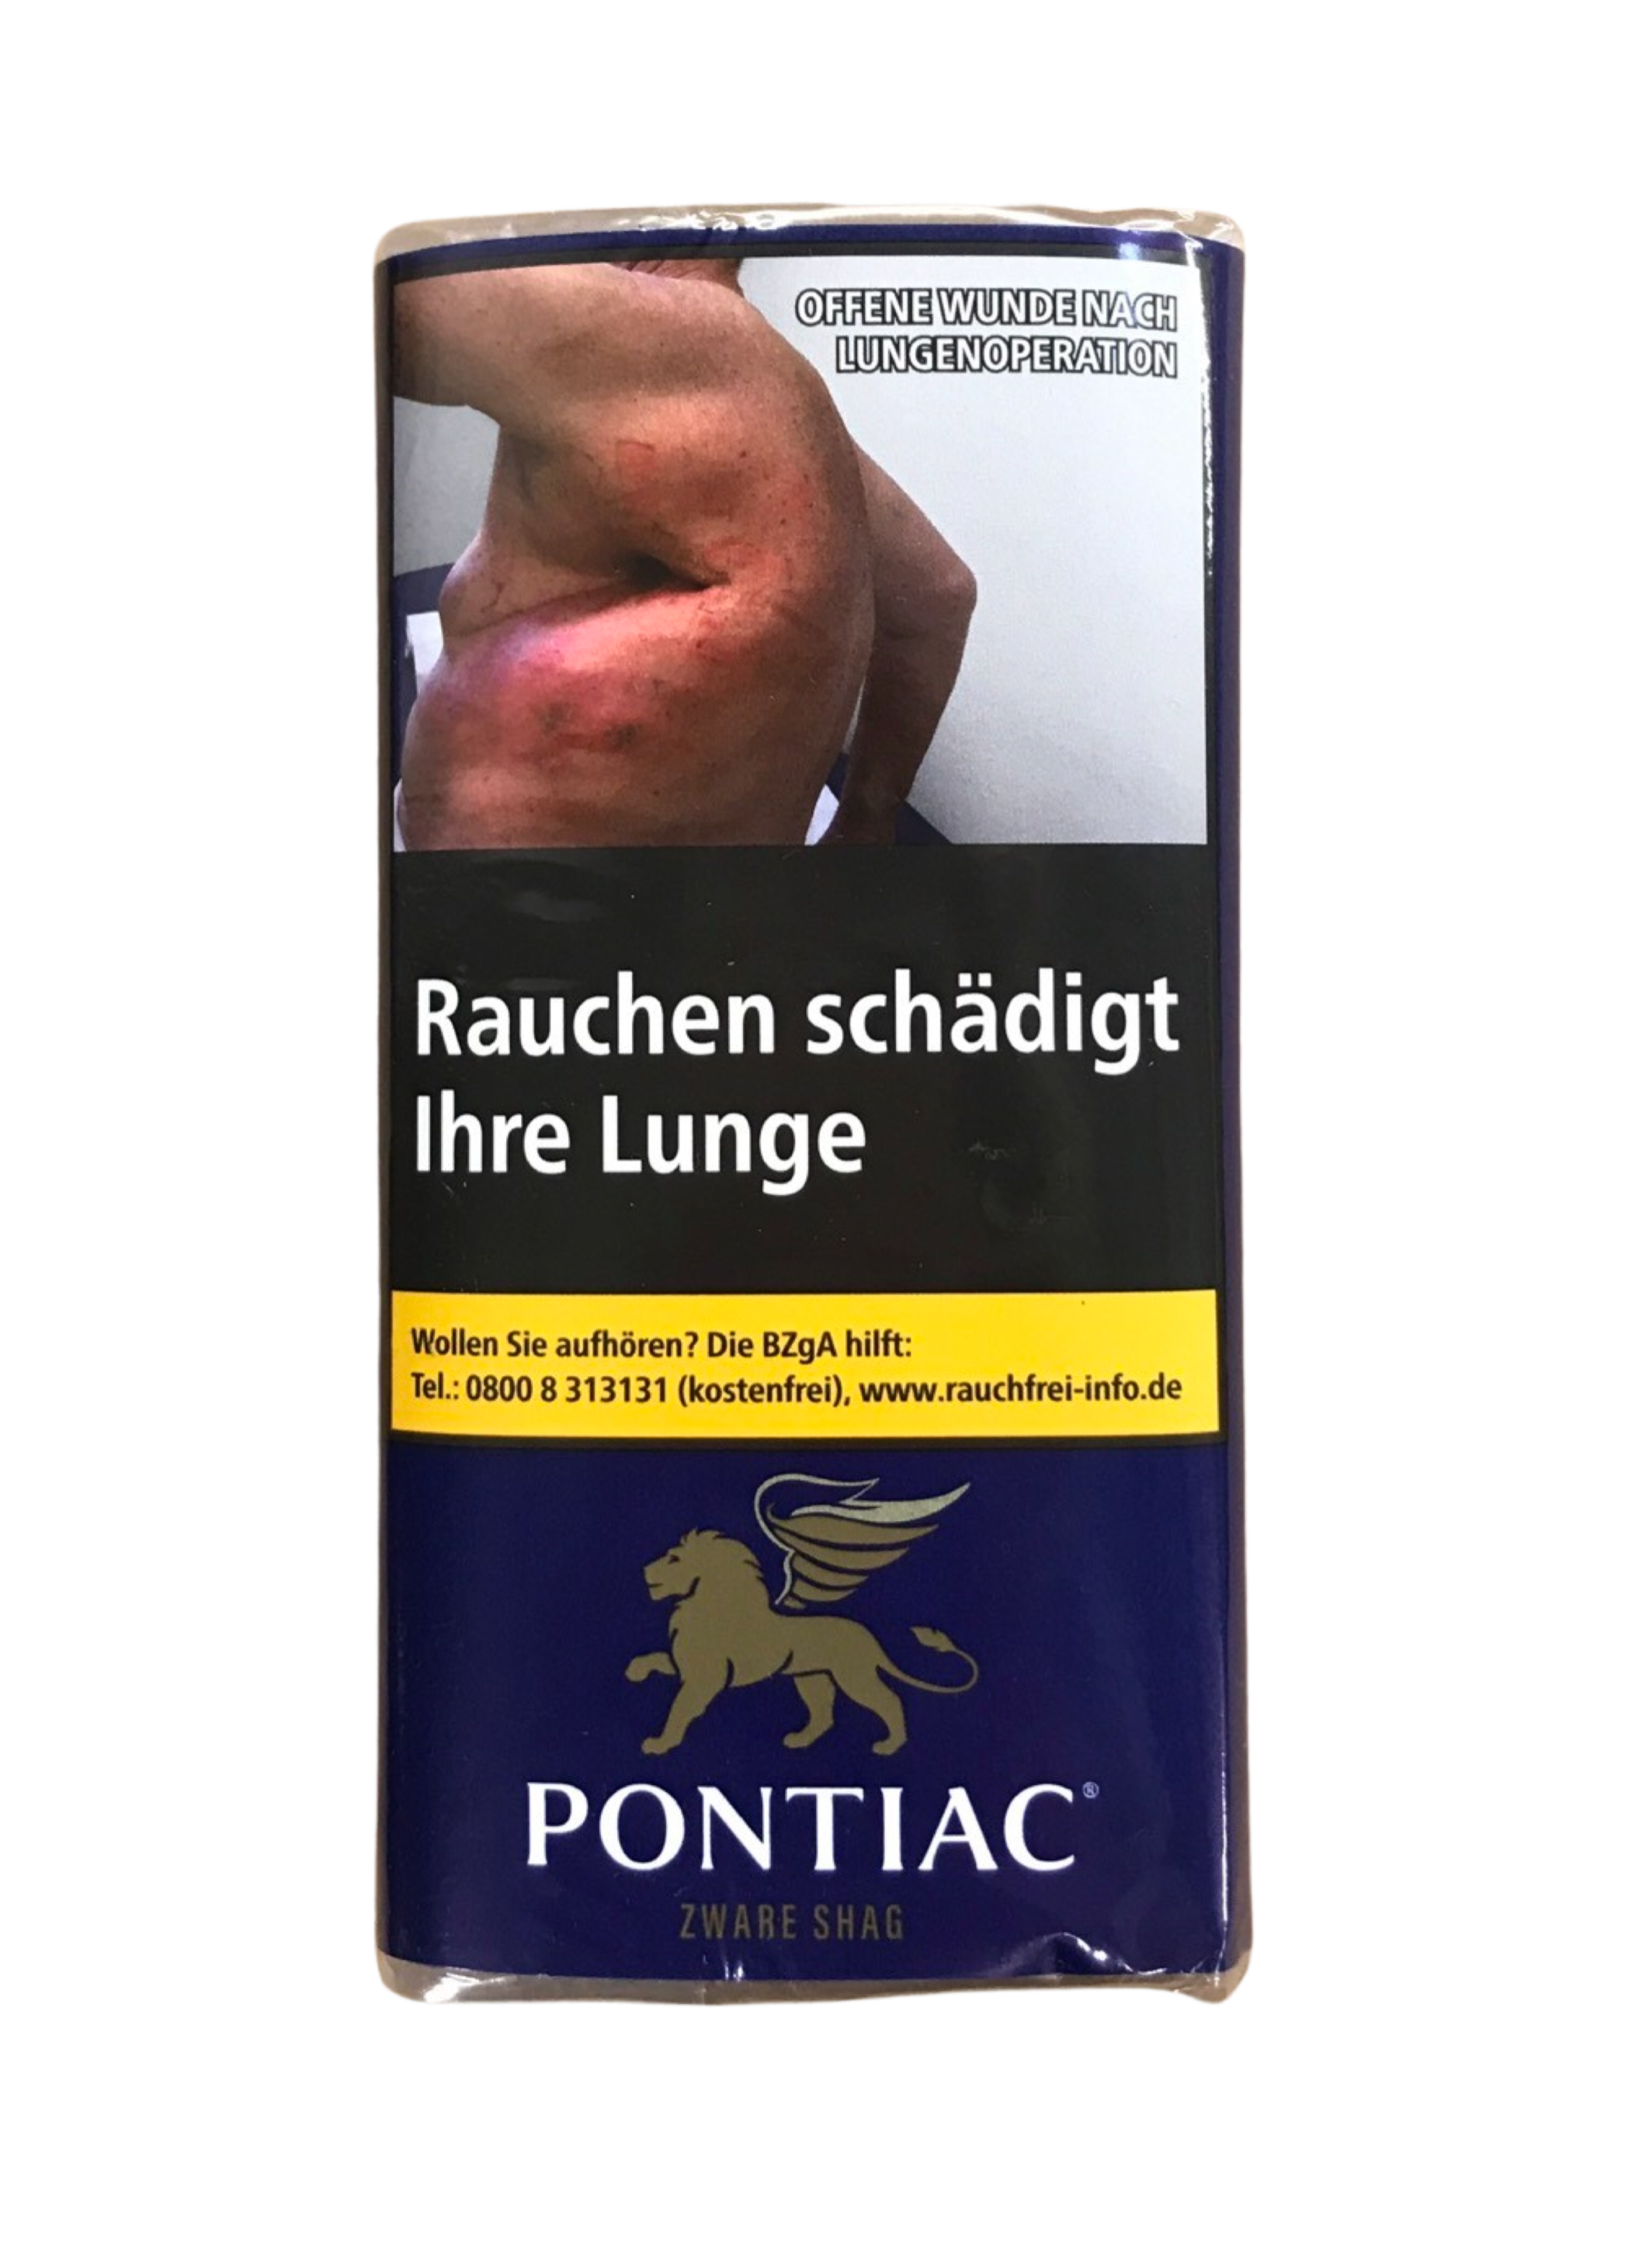 PONTIAC Zware Shag (5)